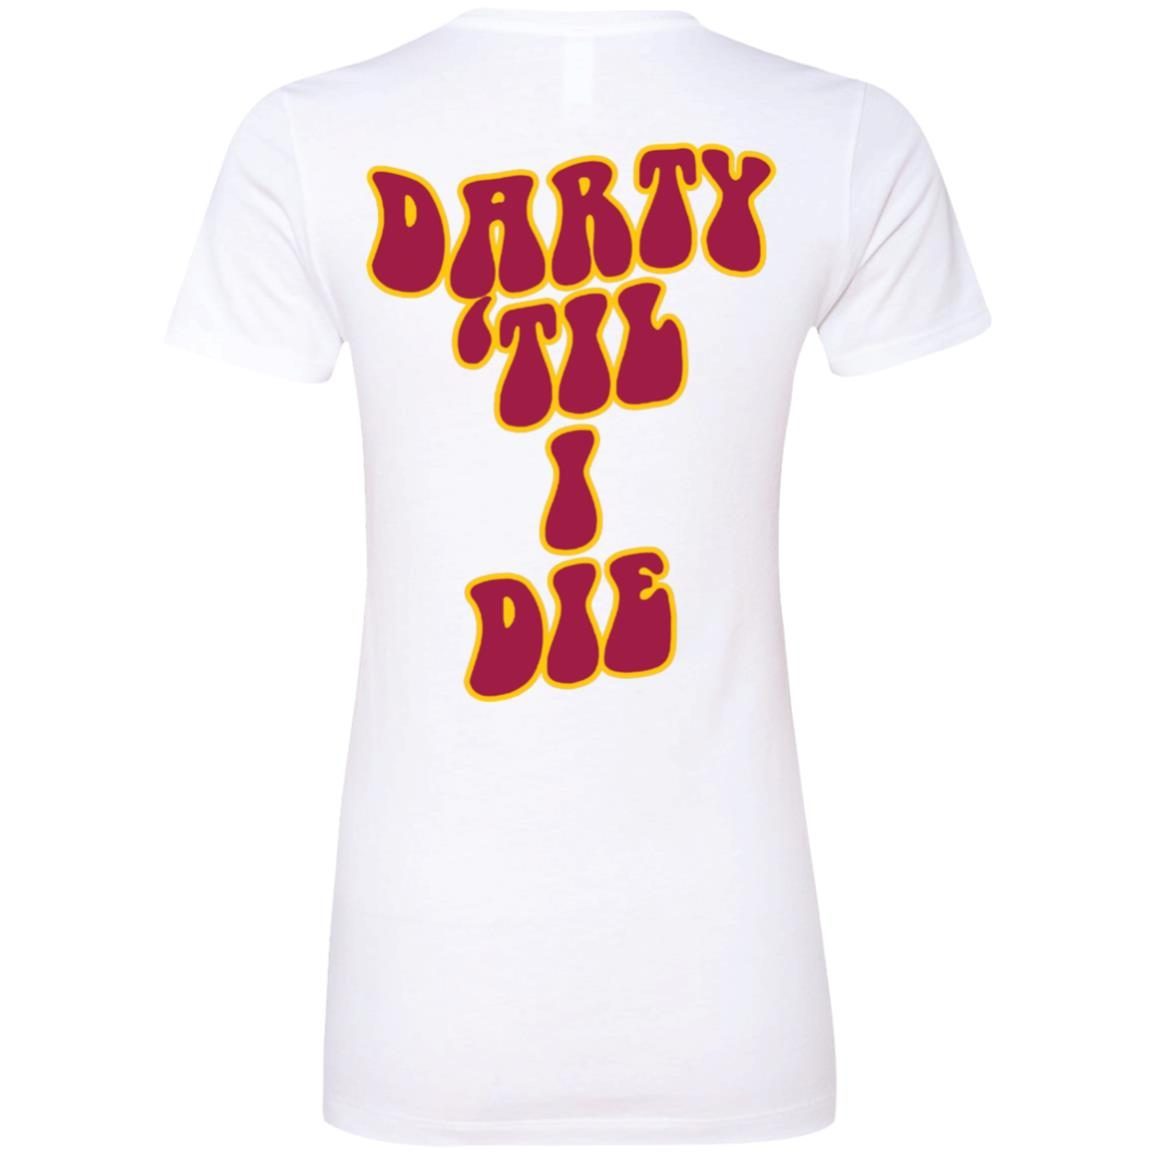 Darty Til I Die Shirt